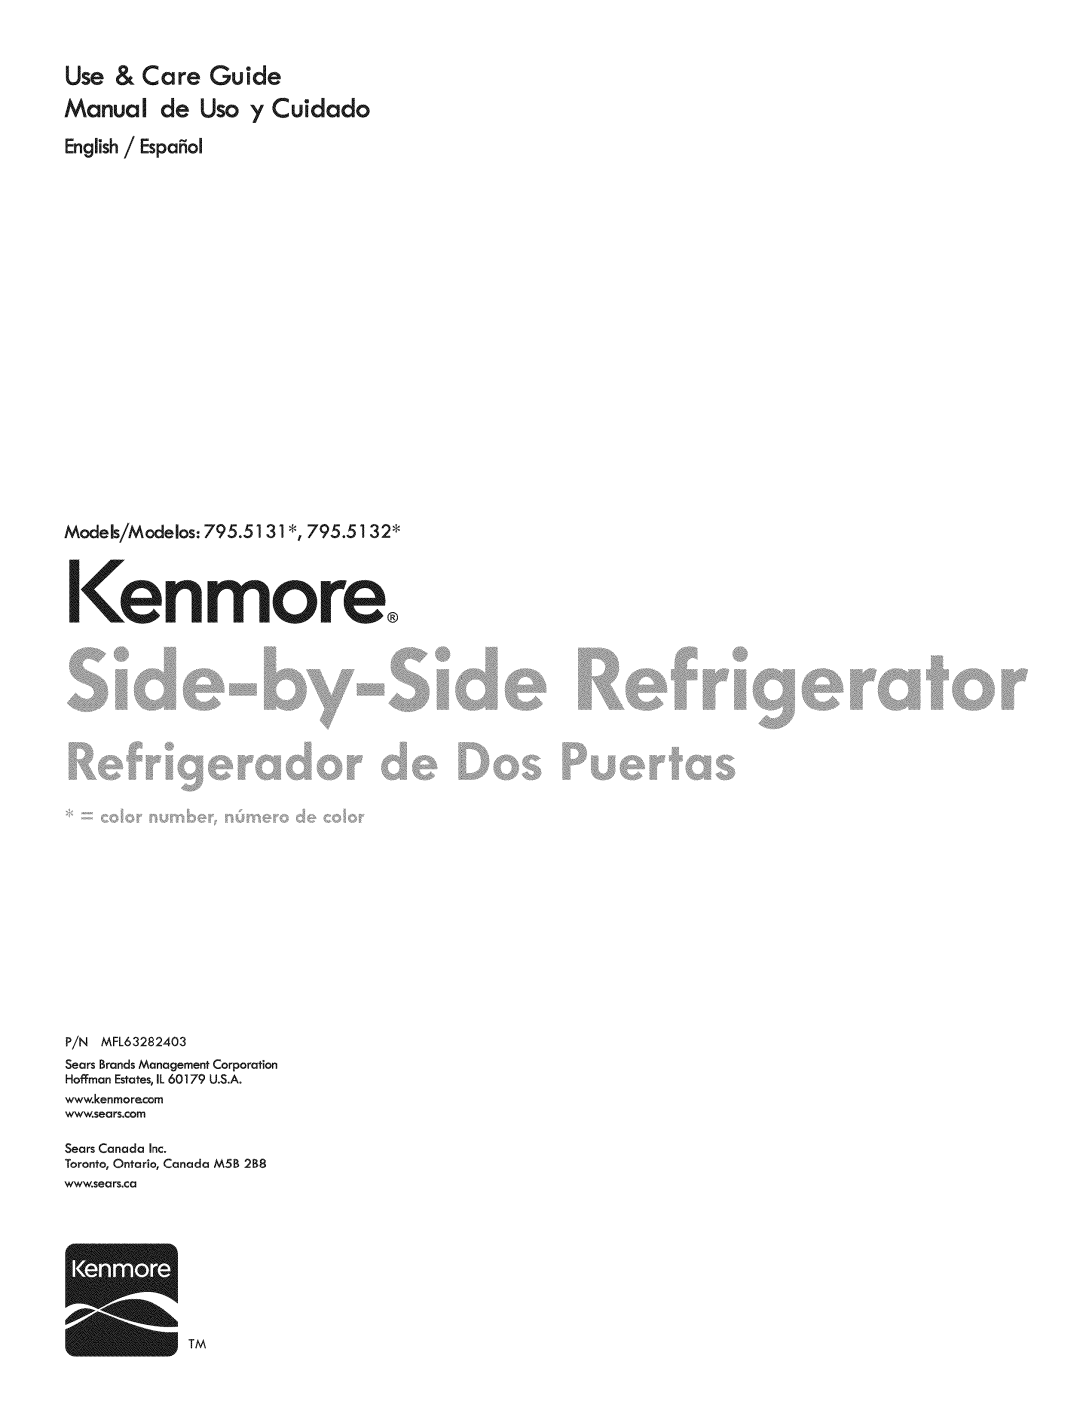 Kenmore 795.5131 manual English / Espafiol, Models/Modelos, Kenmoreo, Use & Care Guide Manual de Uso y Cuidado 